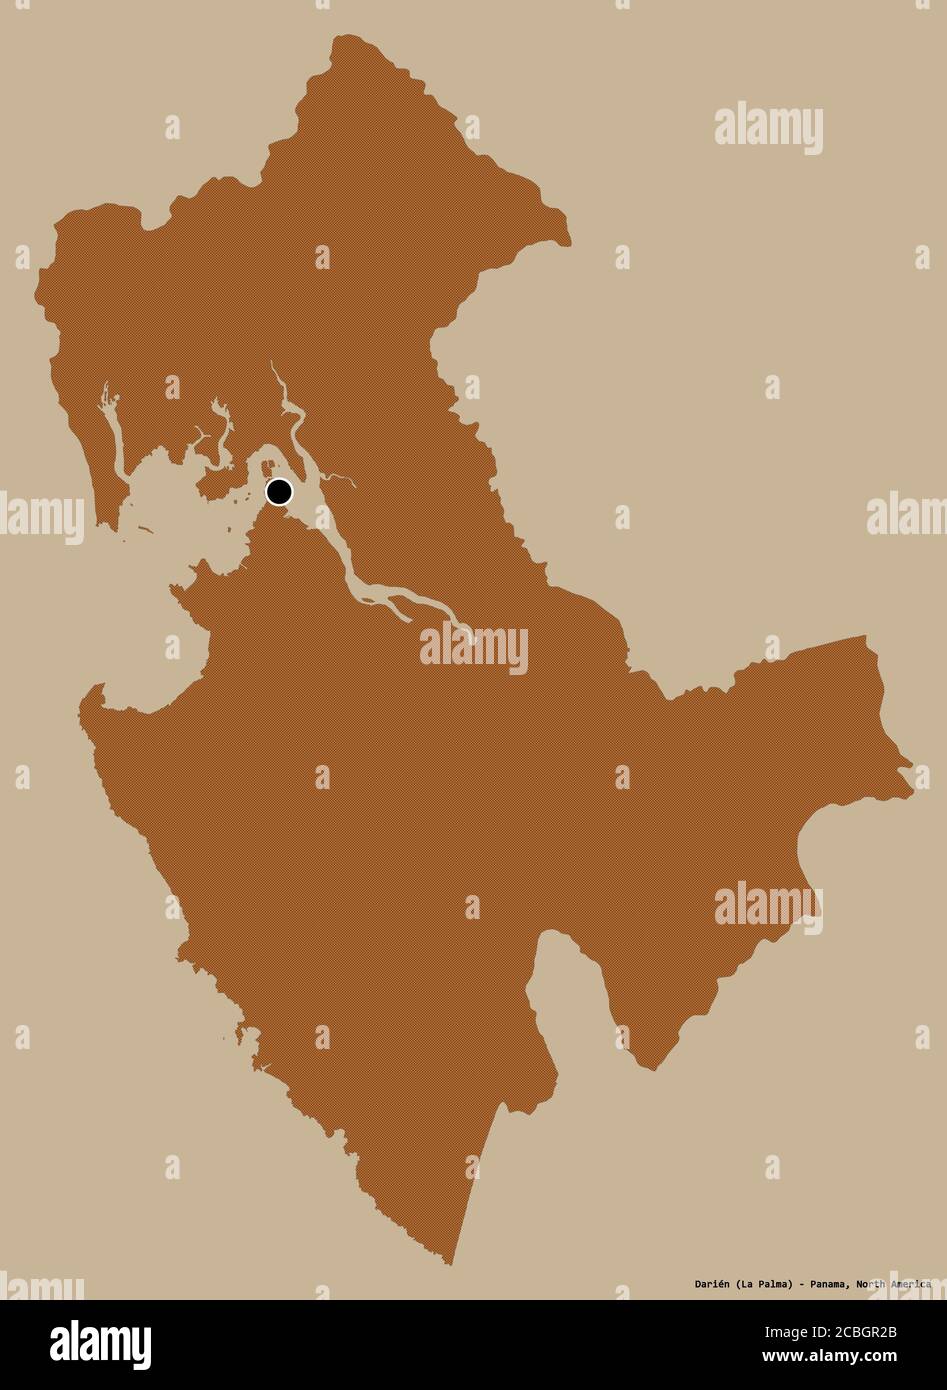 Forme de Darién, province de Panama, avec sa capitale isolée sur un fond de couleur unie. Composition des textures répétées. Rendu 3D Banque D'Images